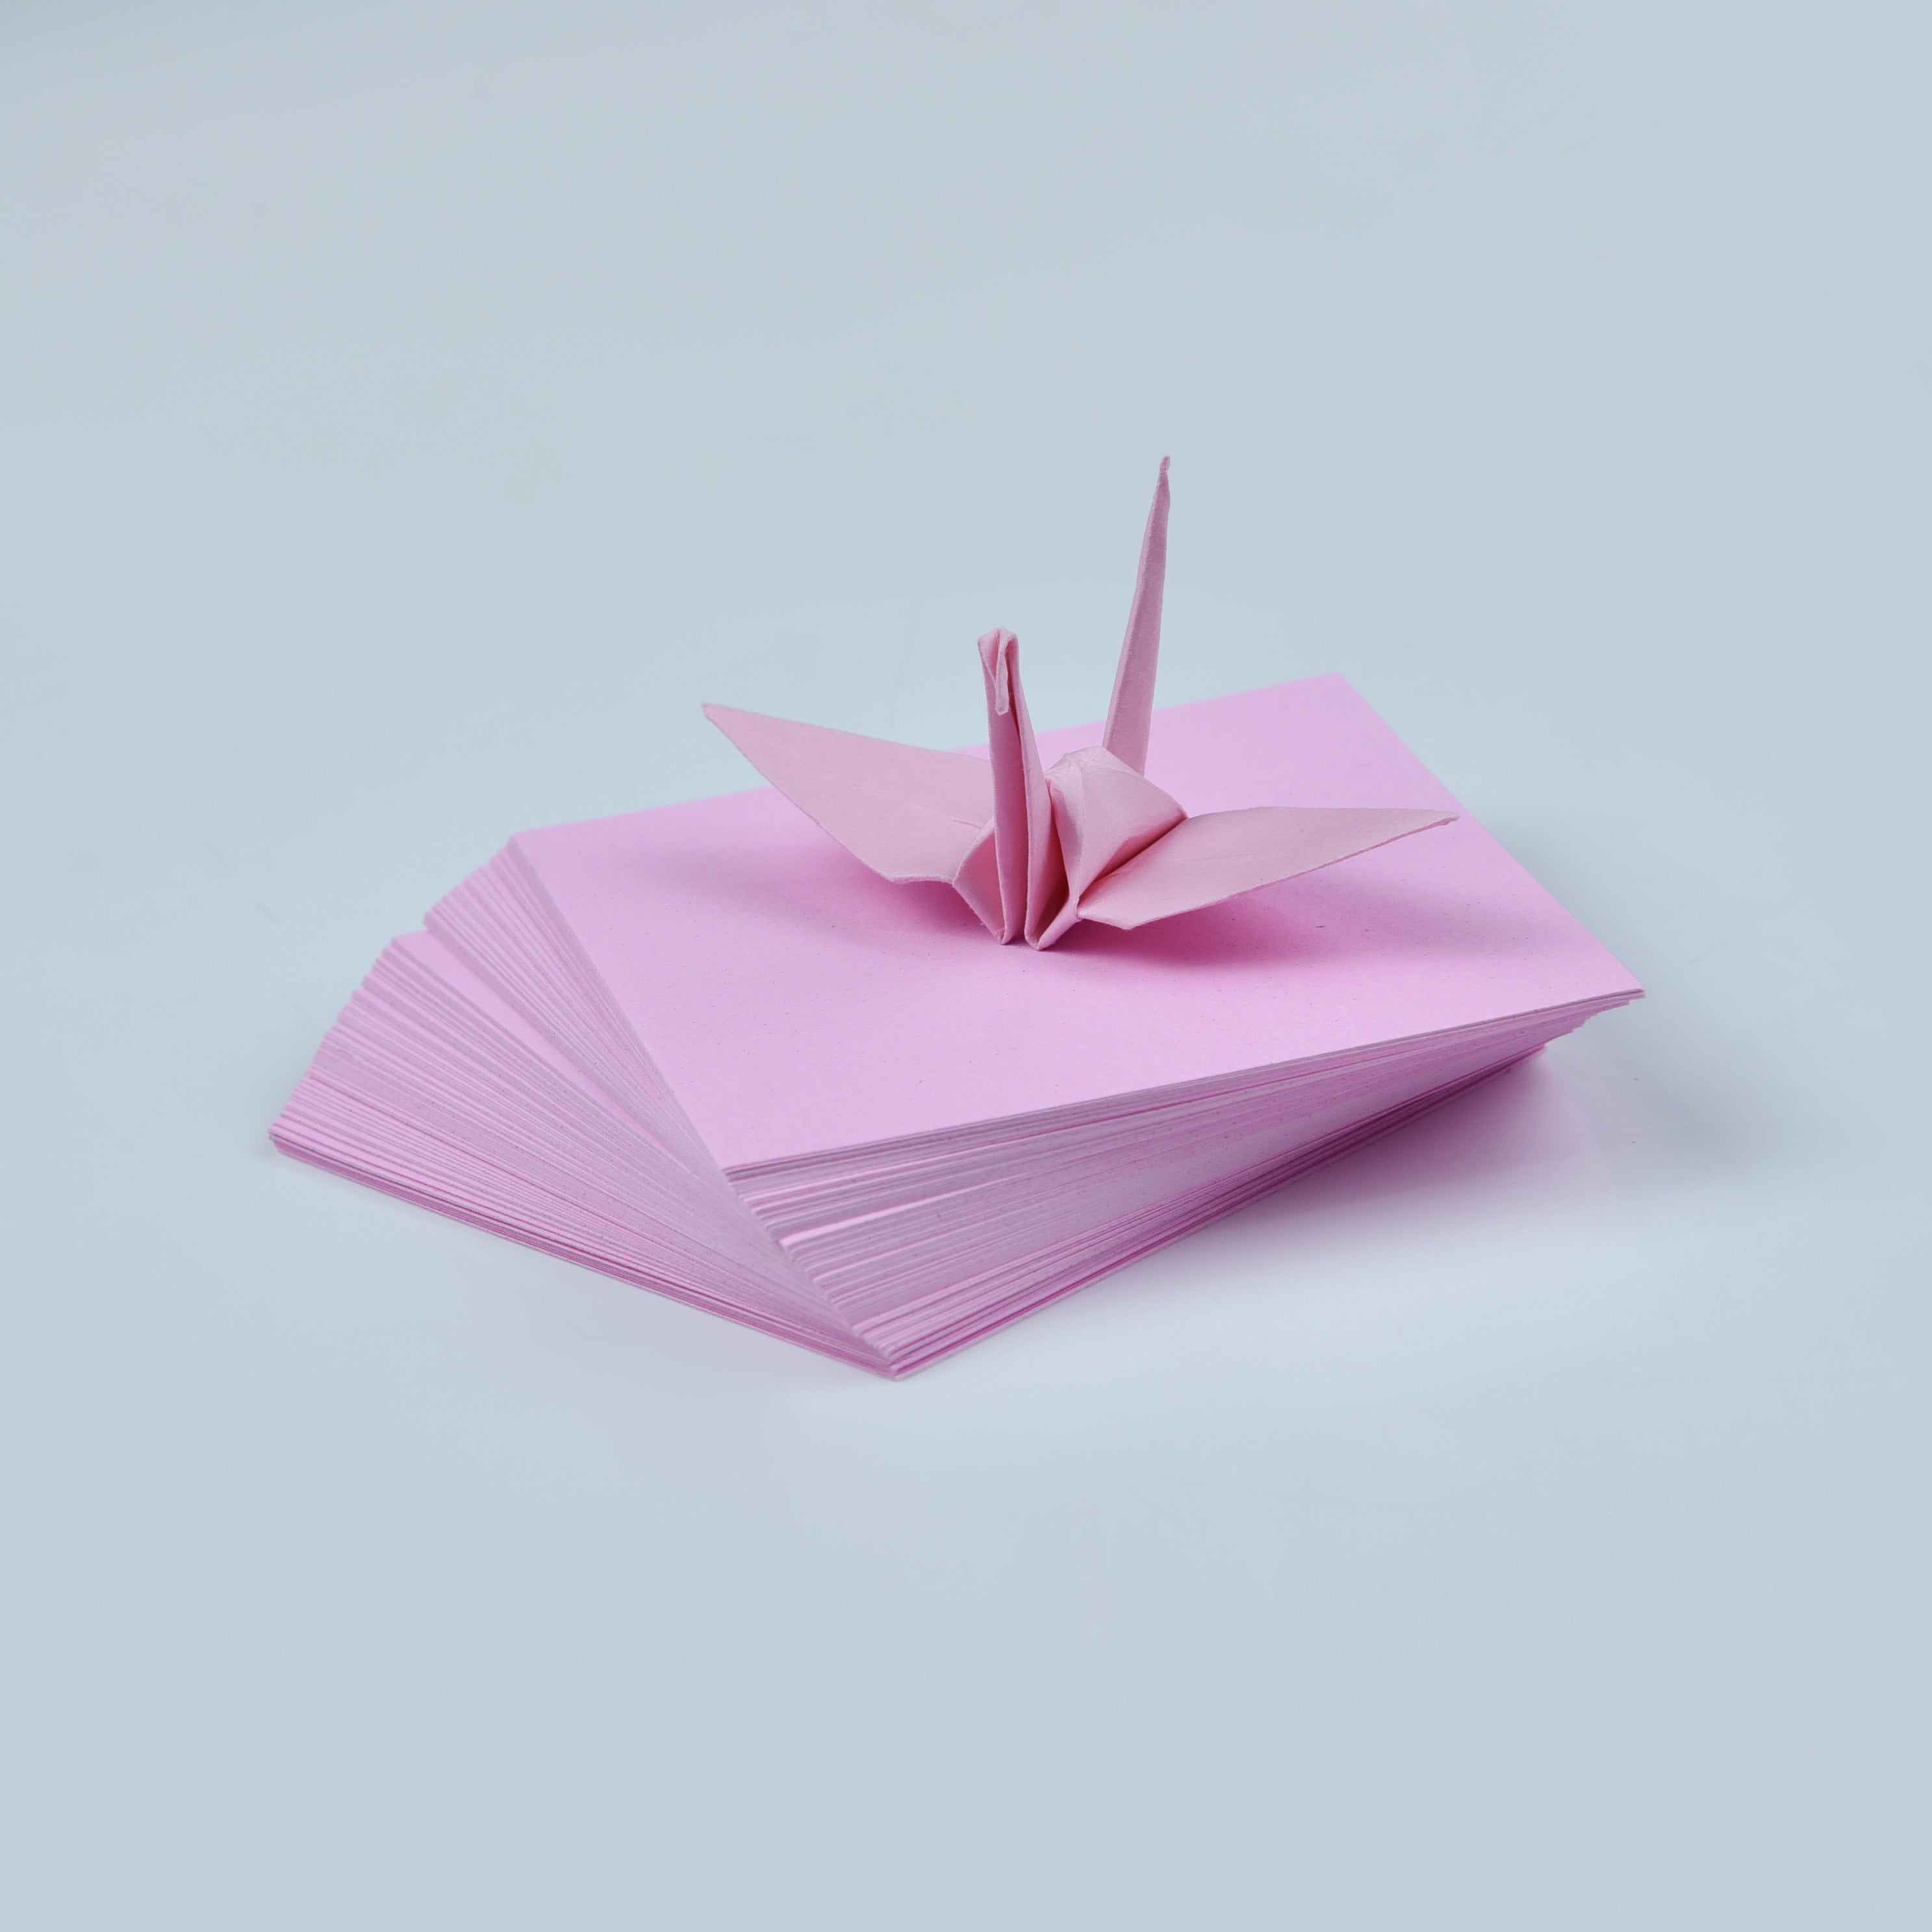 100 fogli di carta origami - 3x3 pollici - Confezione di carta quadrata per piegare, gru origami e decorazioni - S12